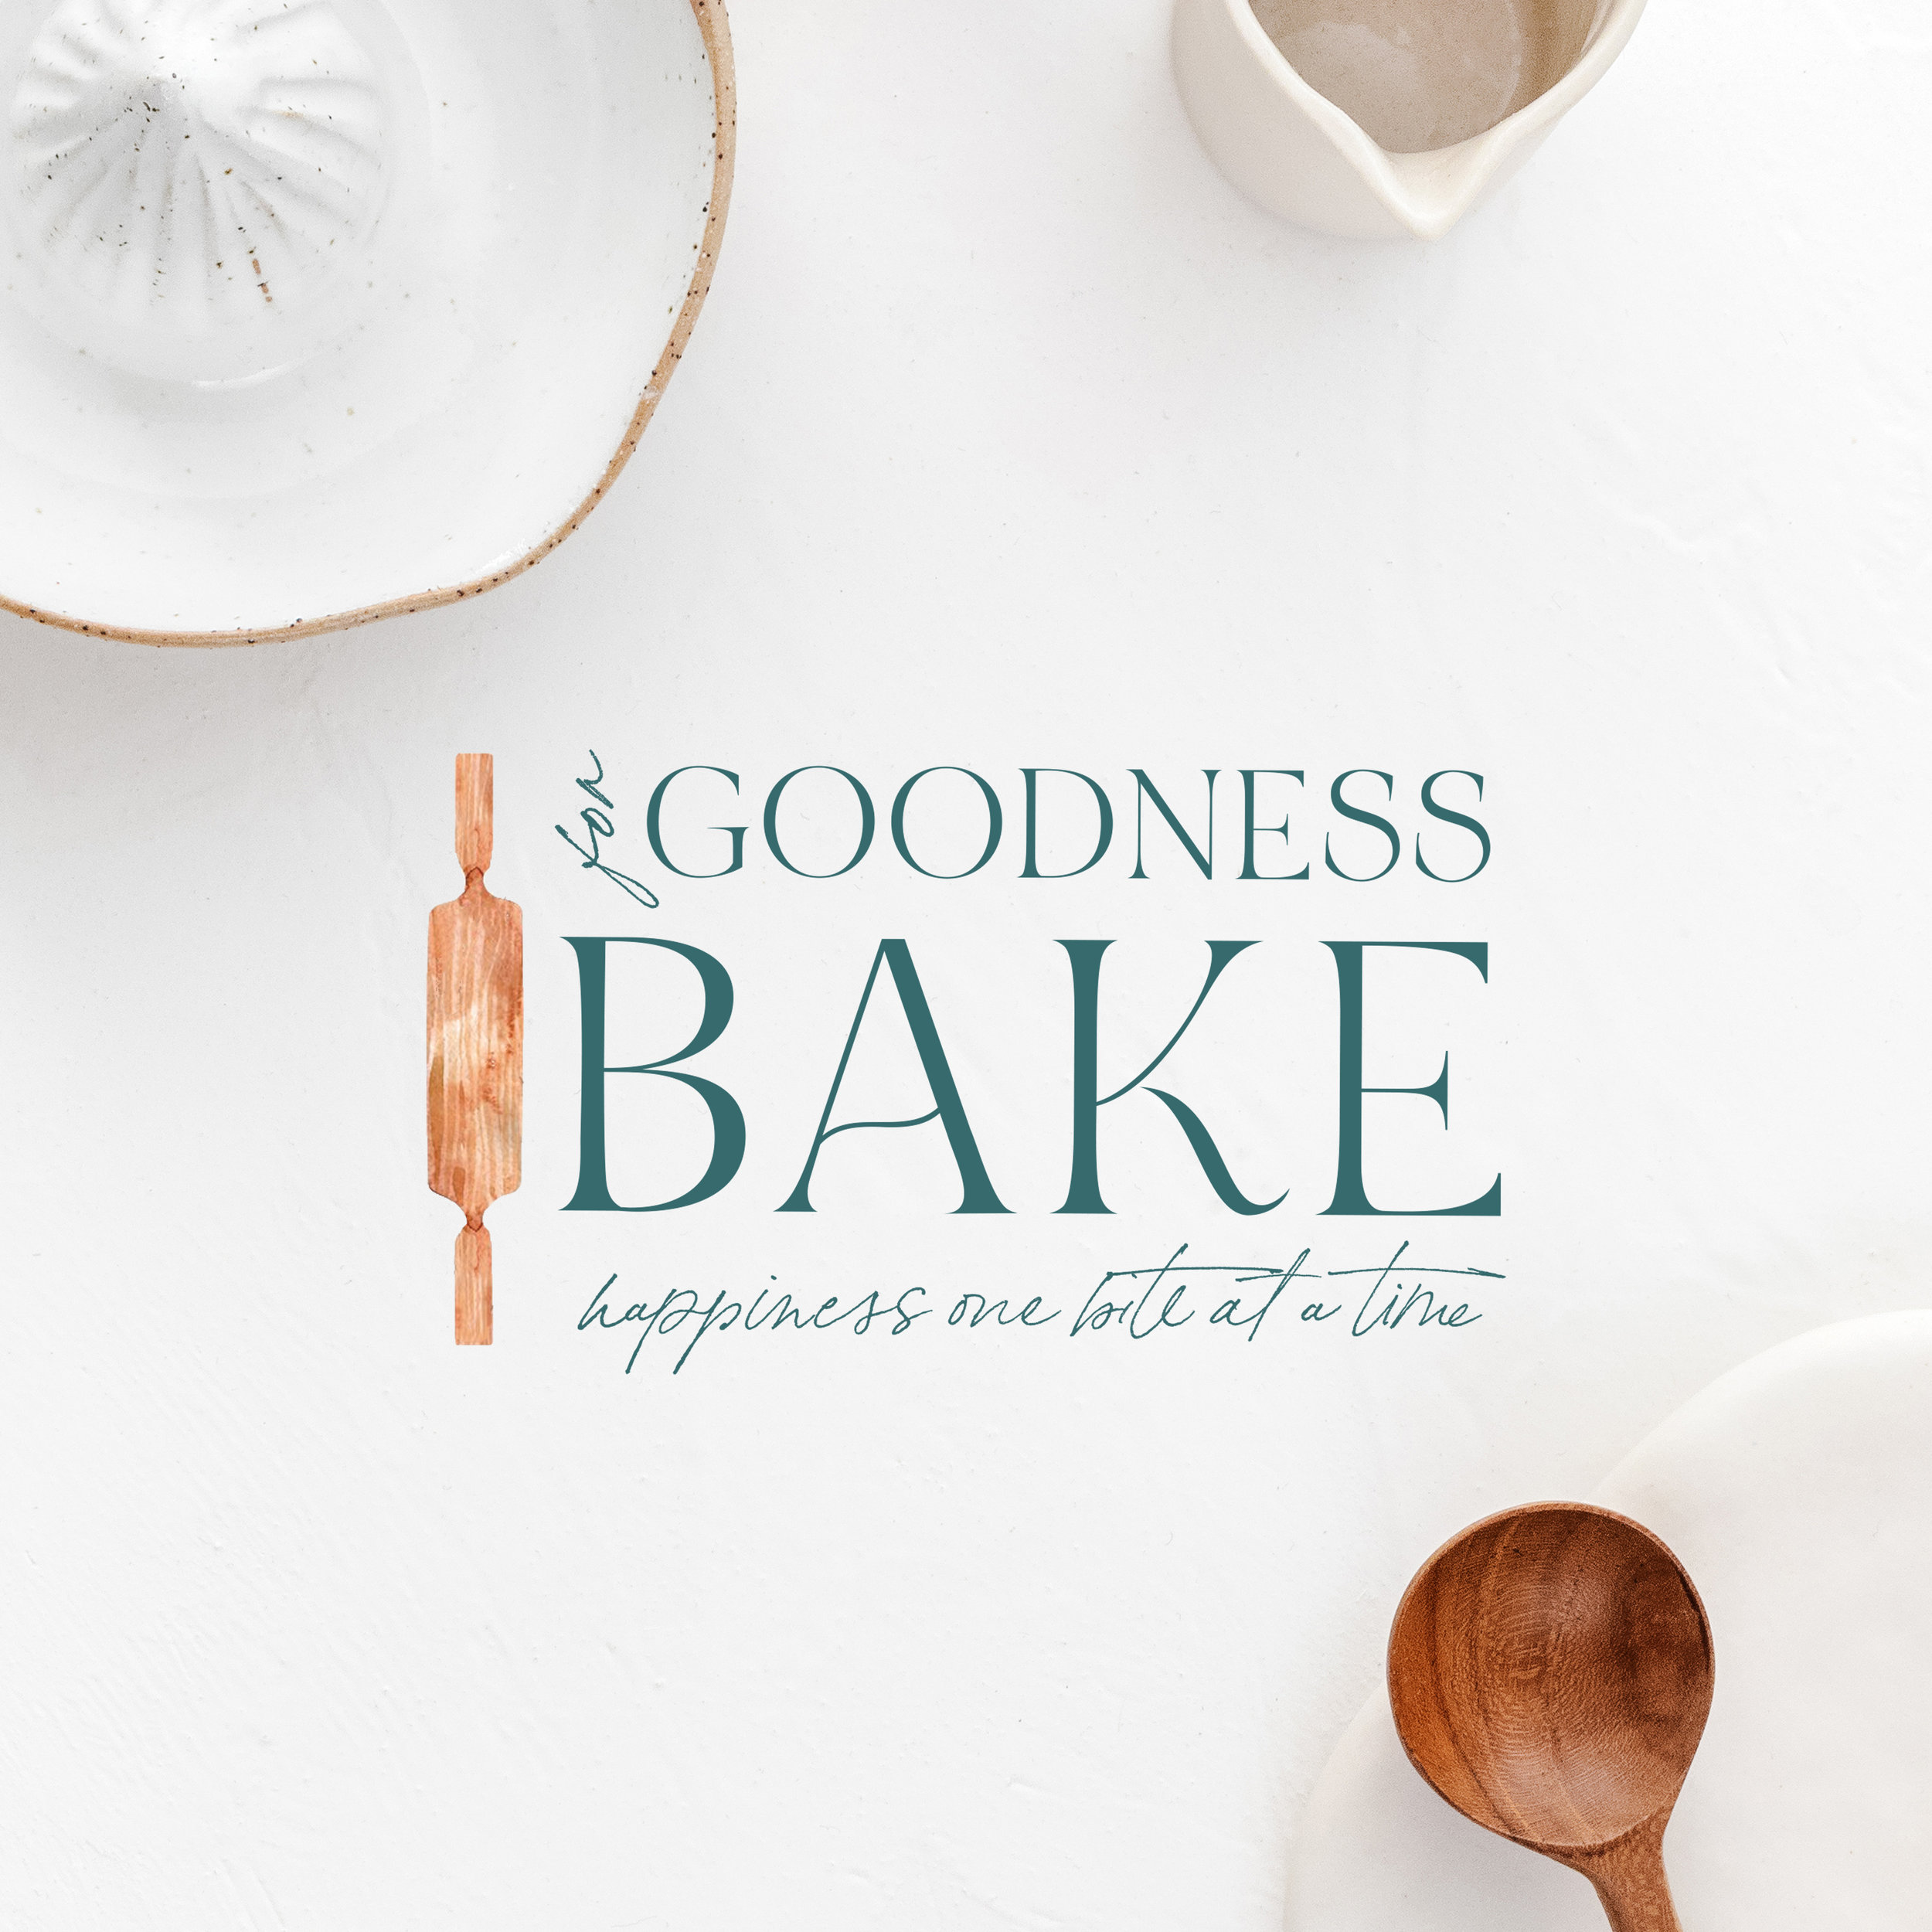 For Goodness Bake | Branding by Jula Paper Co.